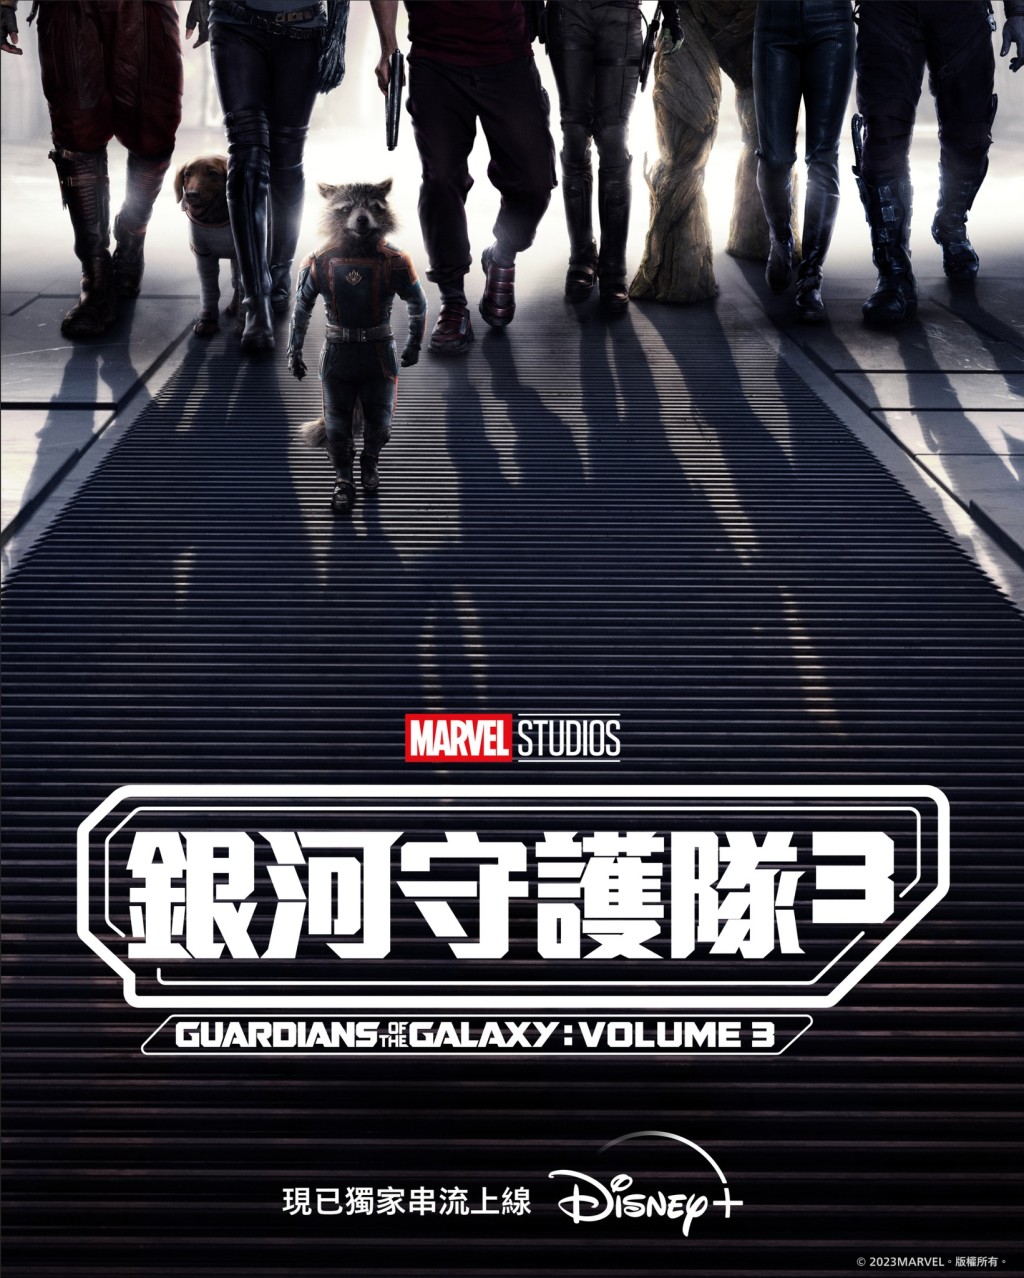 《銀河守護隊3》（Guardians of the Galaxy Vol. 3）由導演James Gunn執導，堪稱Marvel Studios非一般超級英雄系列完美最終章，亦是James Gunn轉投DC前的最後一部Marvel 作品。（圖片來源：Disney+）